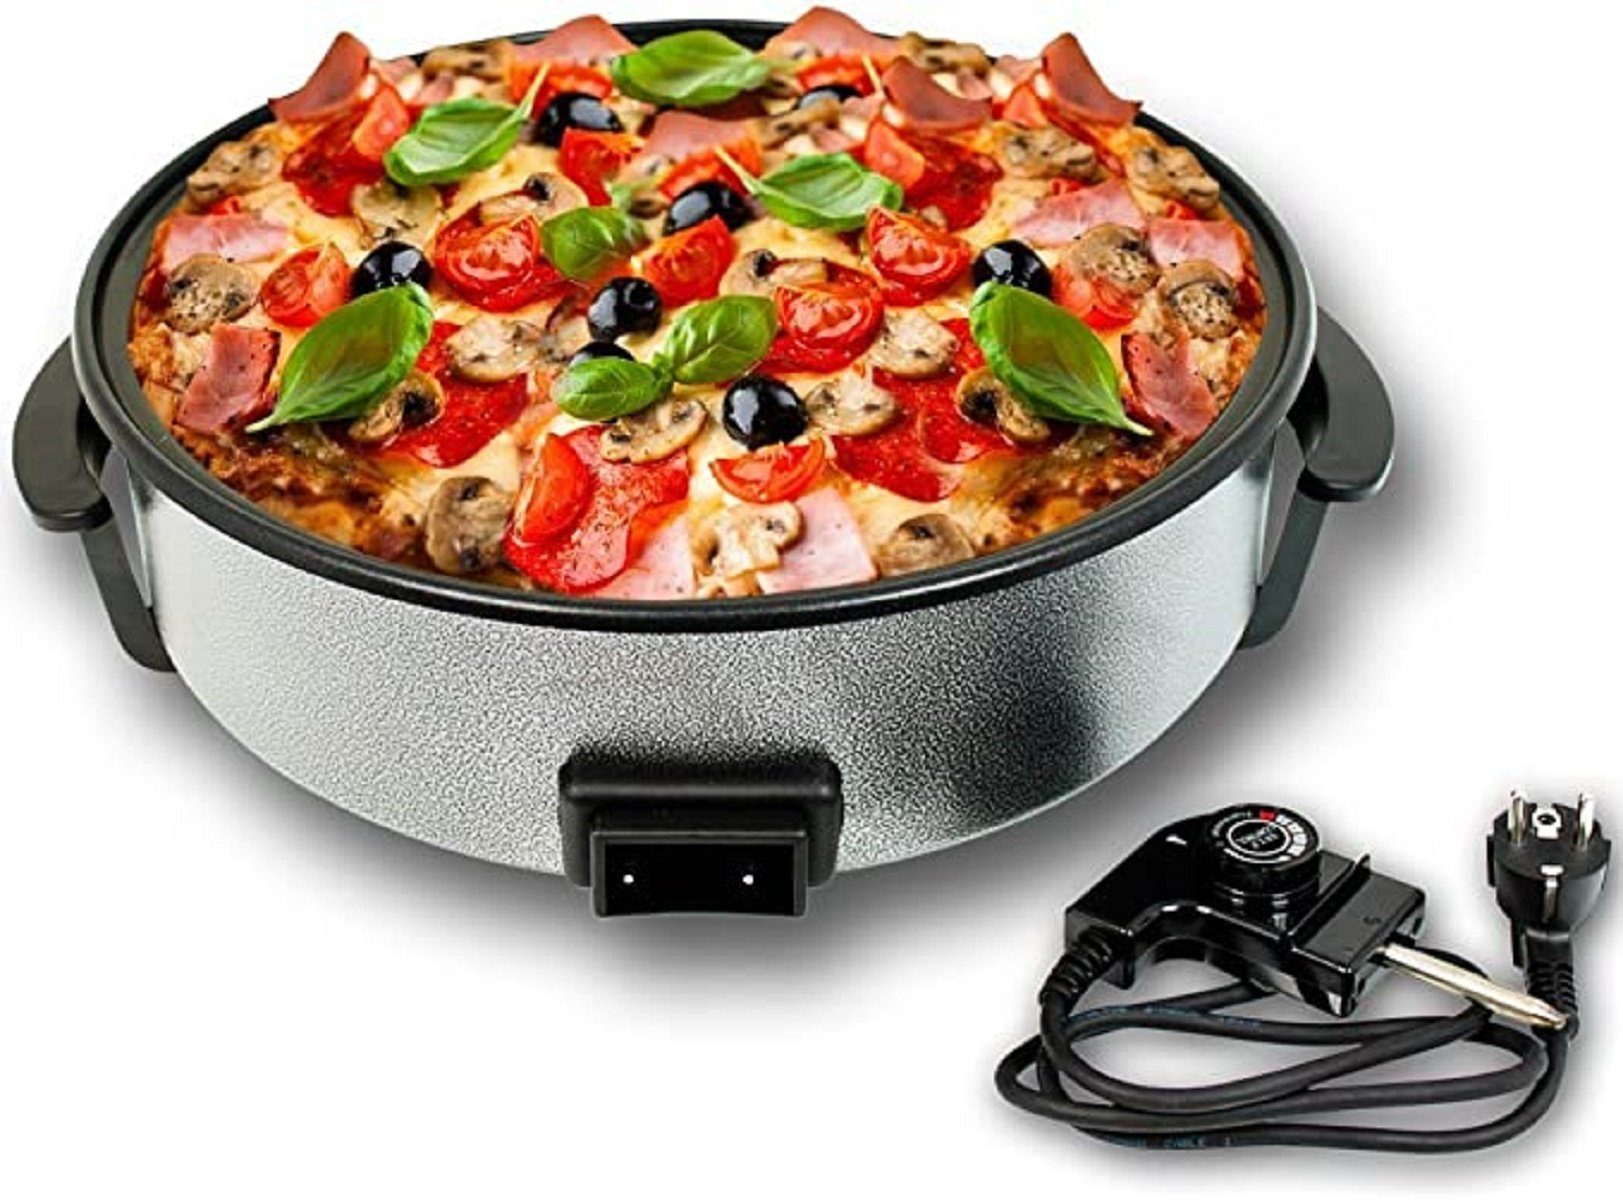 Pizzapfanne Elektrische Antihaft Partypfanne W 1453 1500,00 42x9cm Beschichtet, COFI